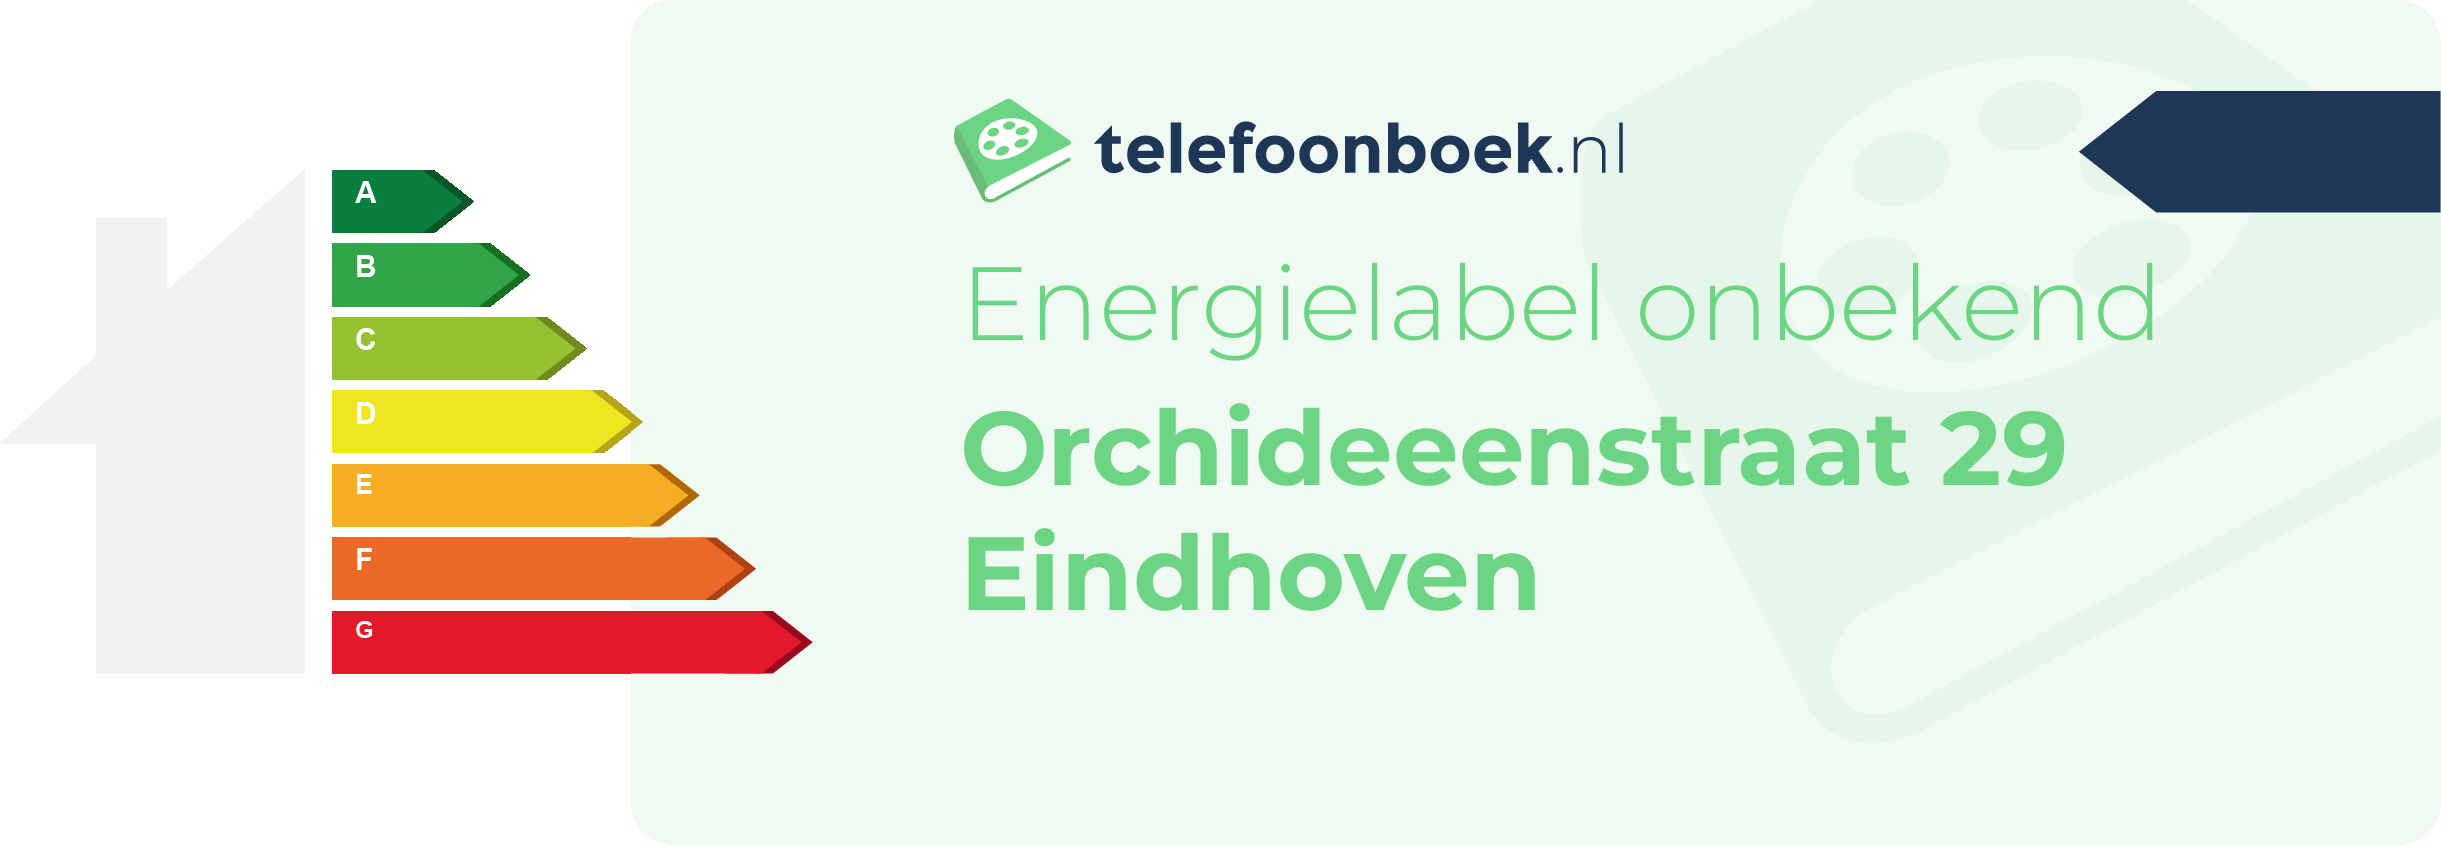 Energielabel Orchideeenstraat 29 Eindhoven